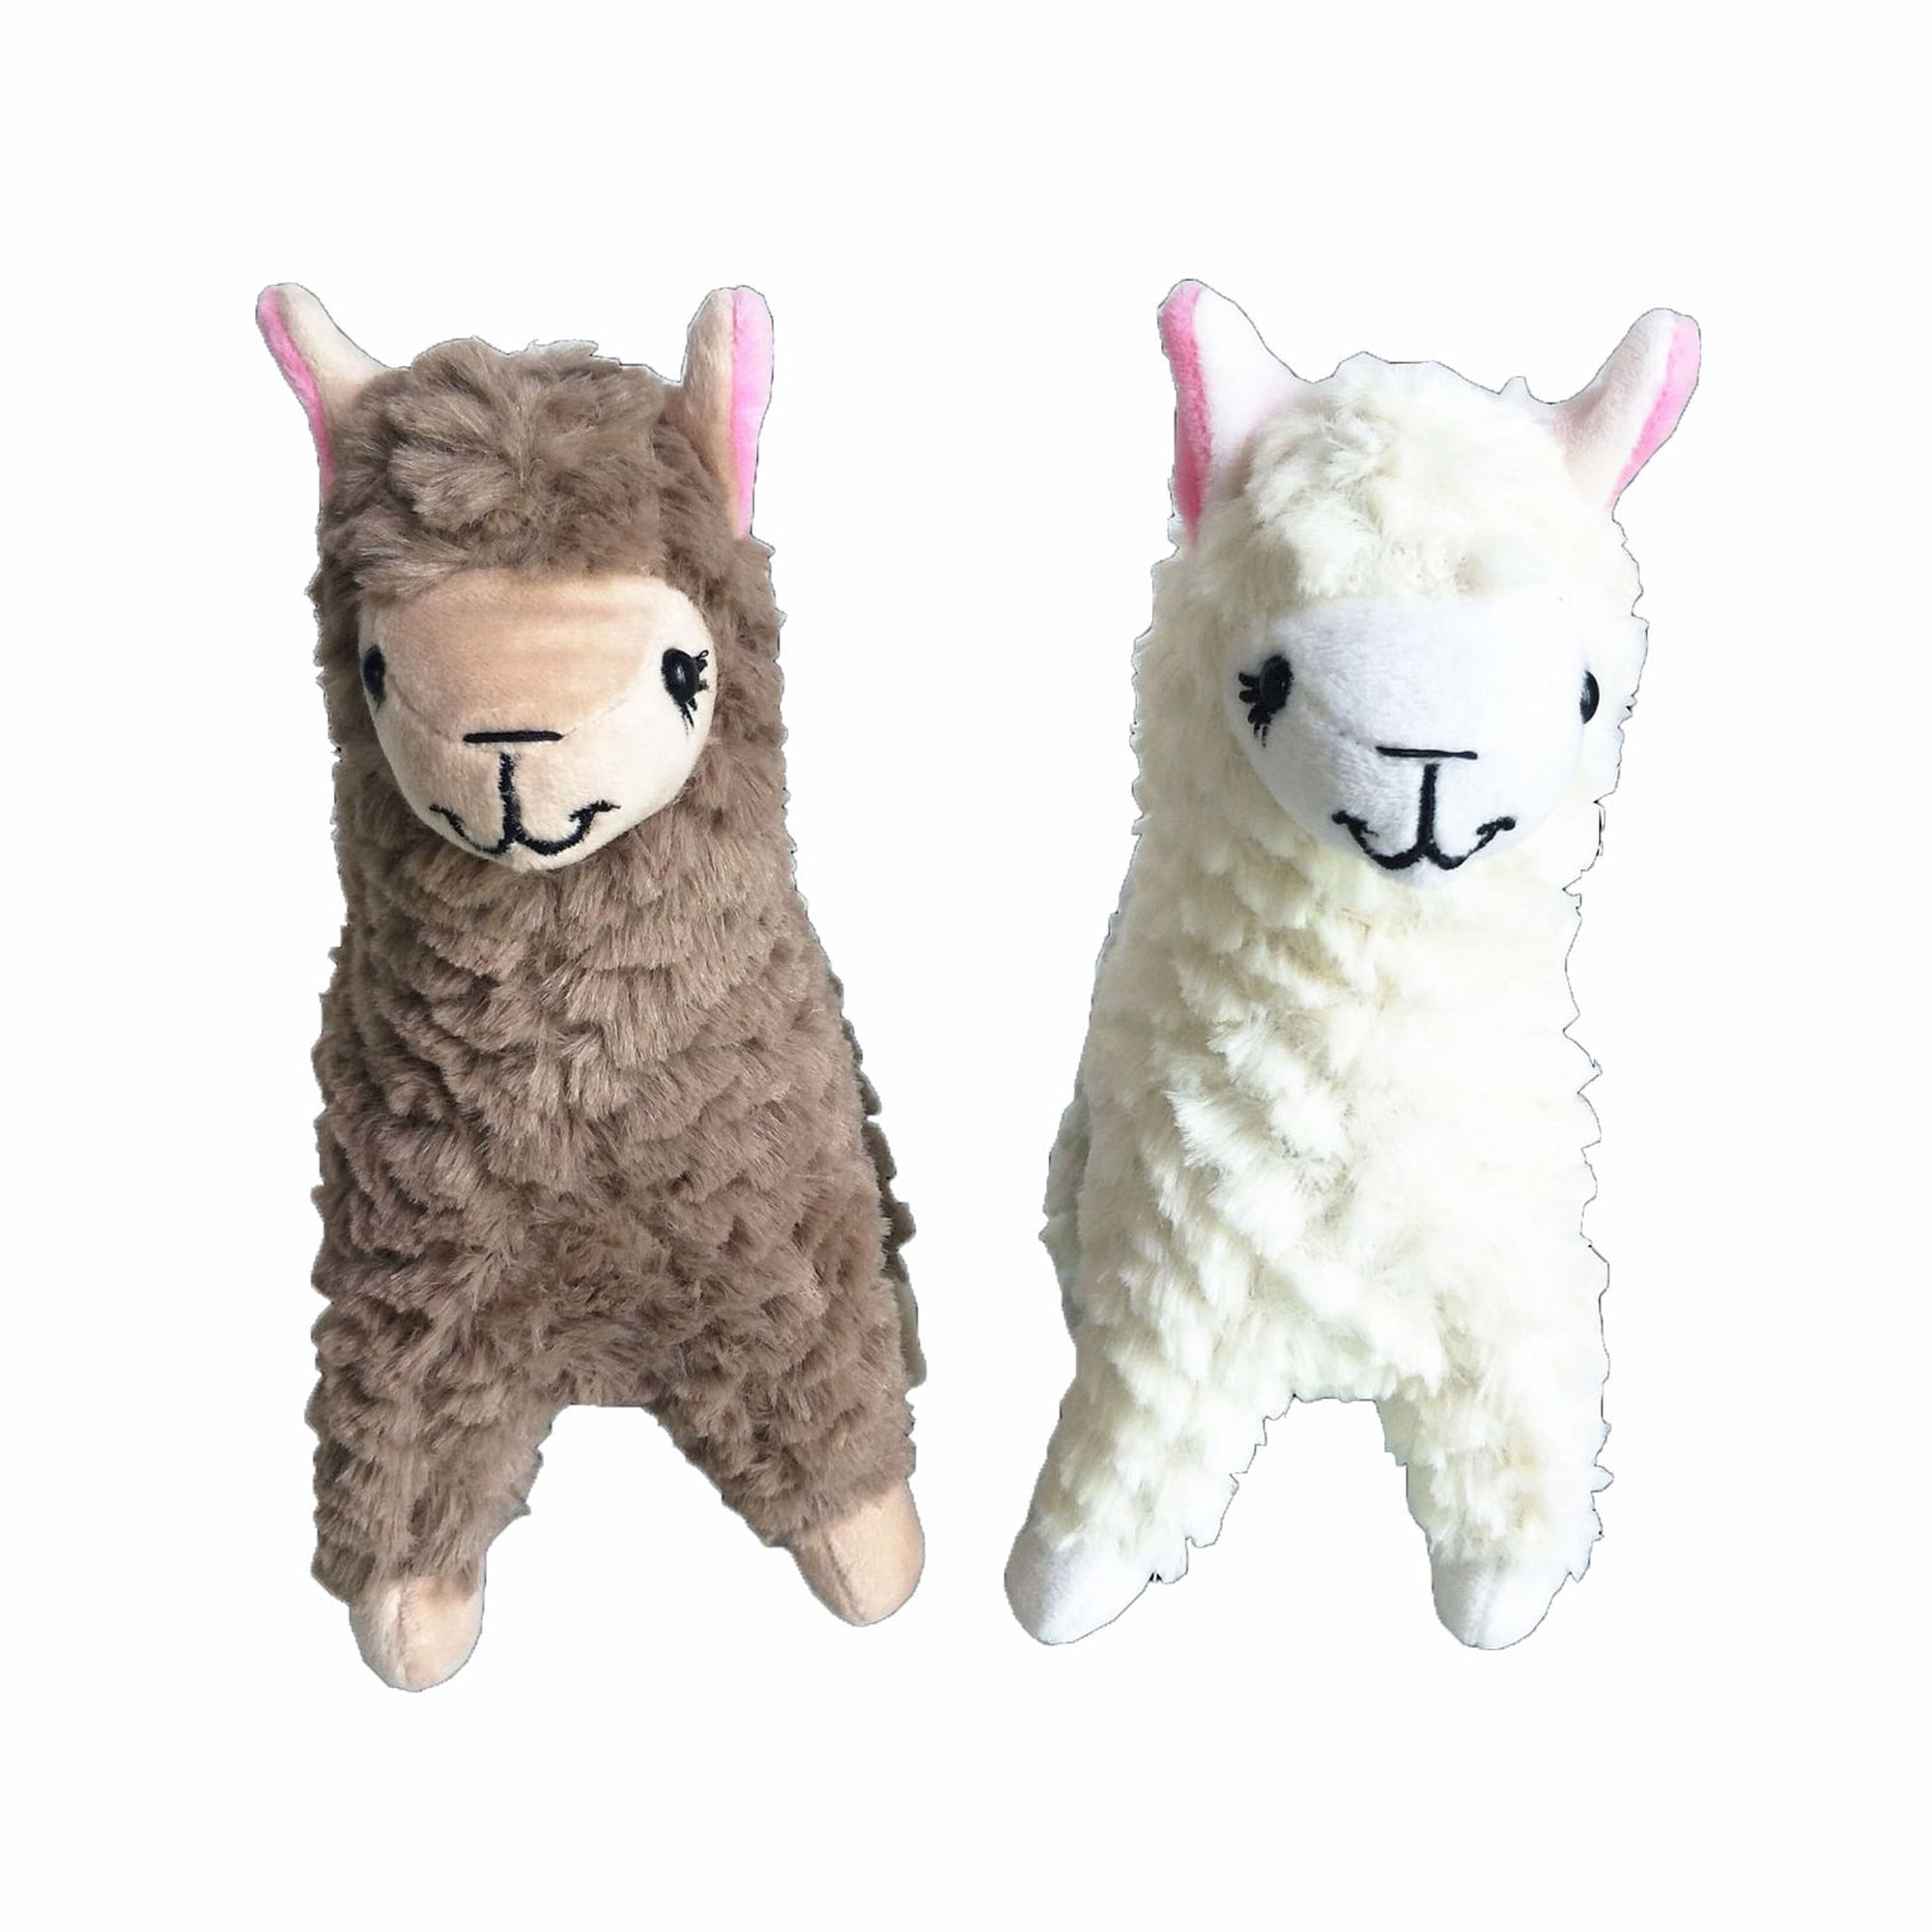 64C9 Cute Alpaca Plush Toy 9.06" Camel Cream Llama Stuffed Animal Kids Doll Gift 